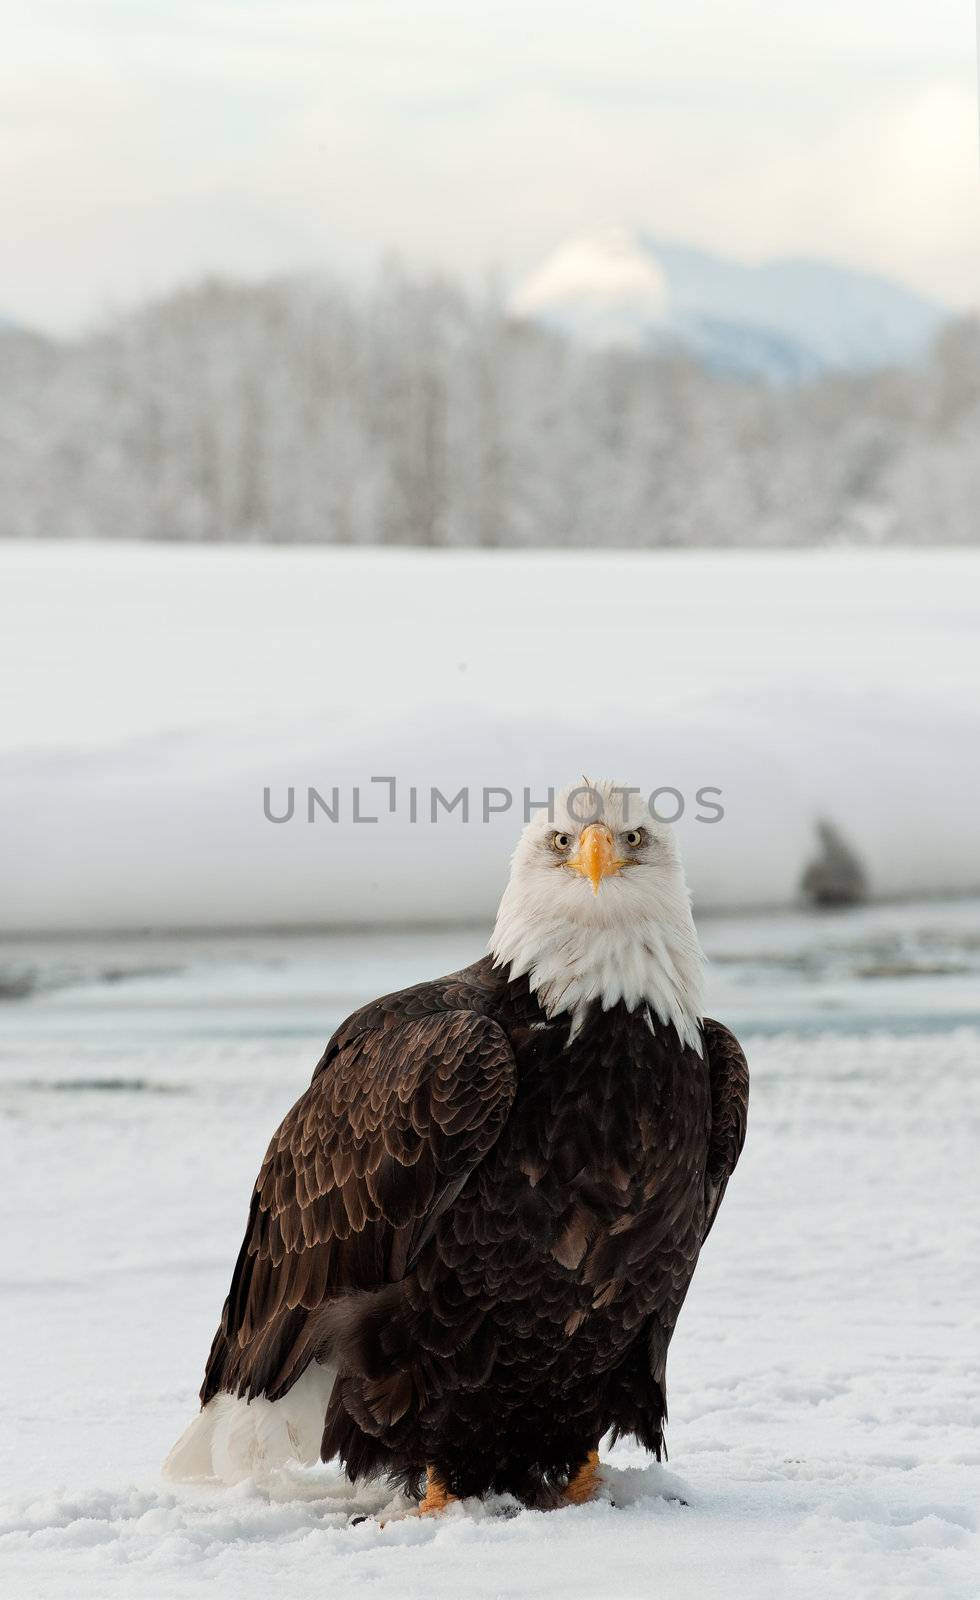  Bald eagle by SURZ